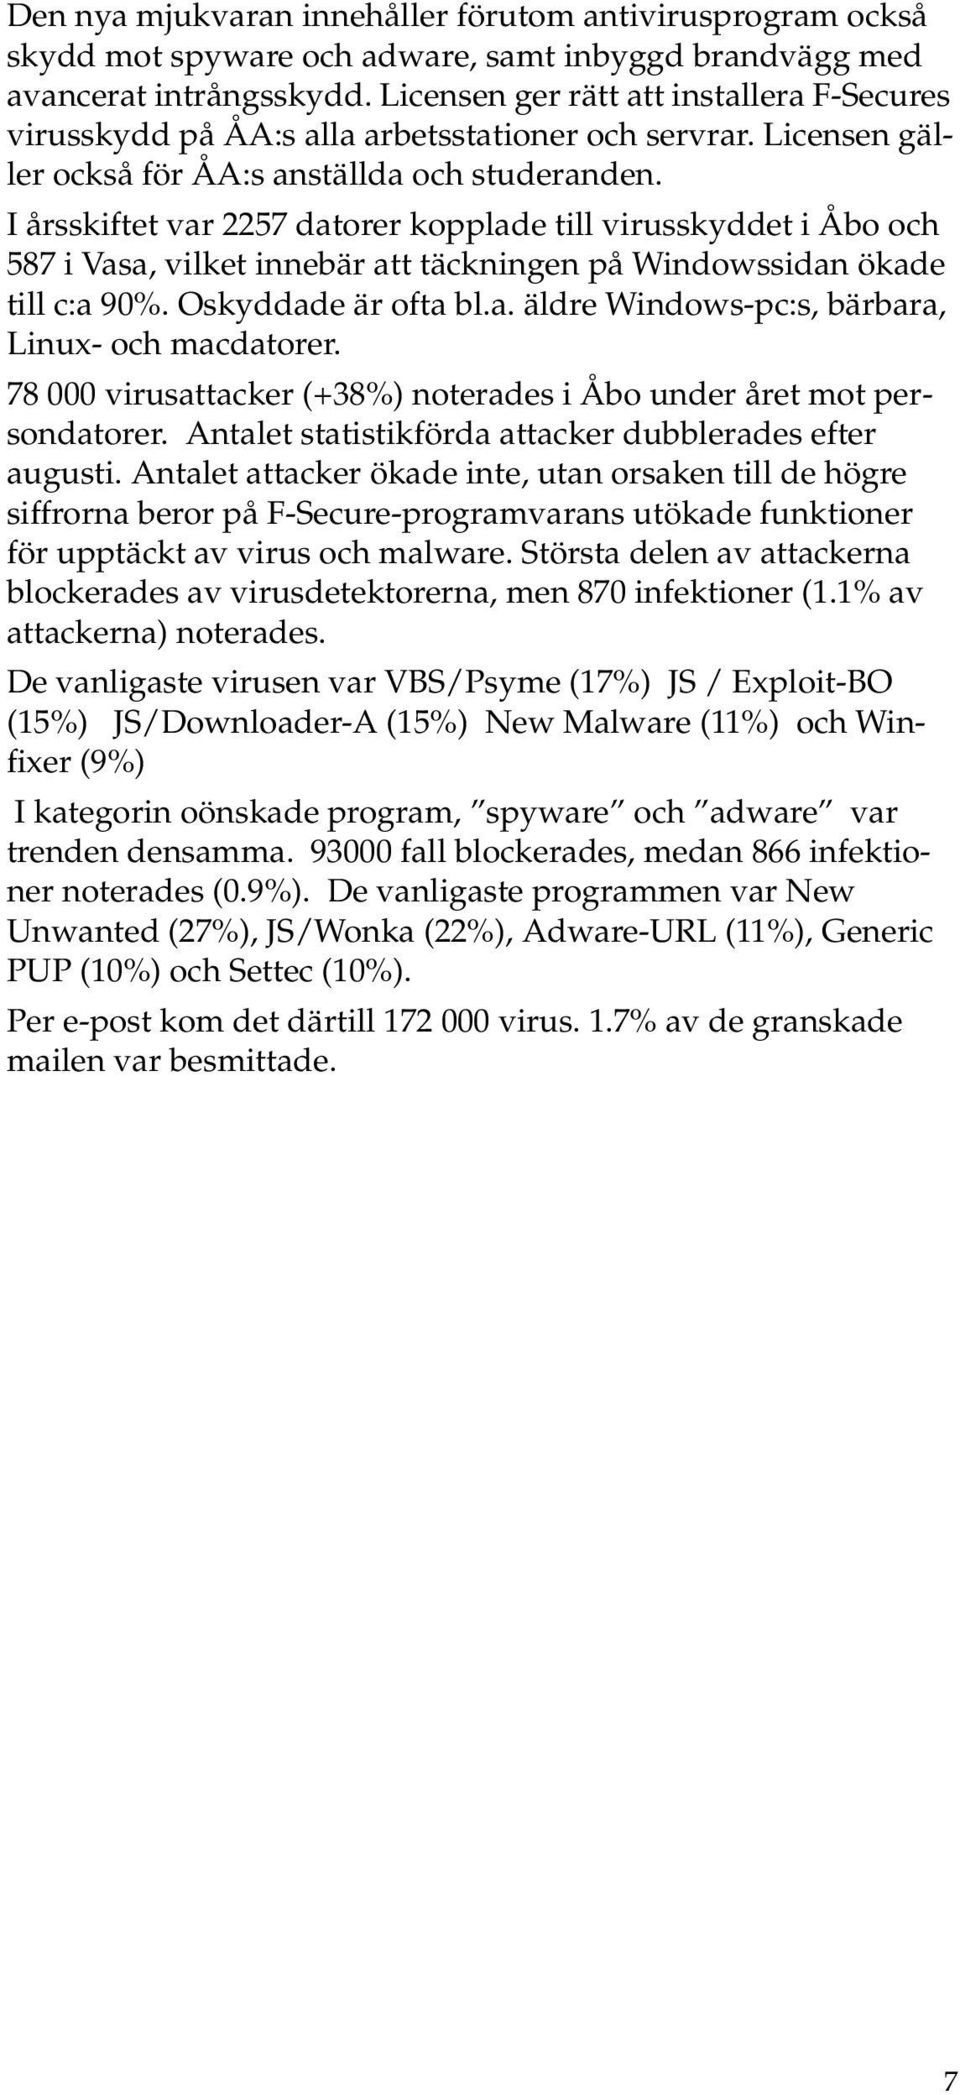 I årsskiftet var 2257 datrer kpplade till virusskyddet i Åb ch 587 i Vasa, vilket innebär att täckningen på Windwssidan ökade till c:a 90%. Oskyddade är fta bl.a. äldre Windws-pc:s, bärbara, Linux- ch macdatrer.